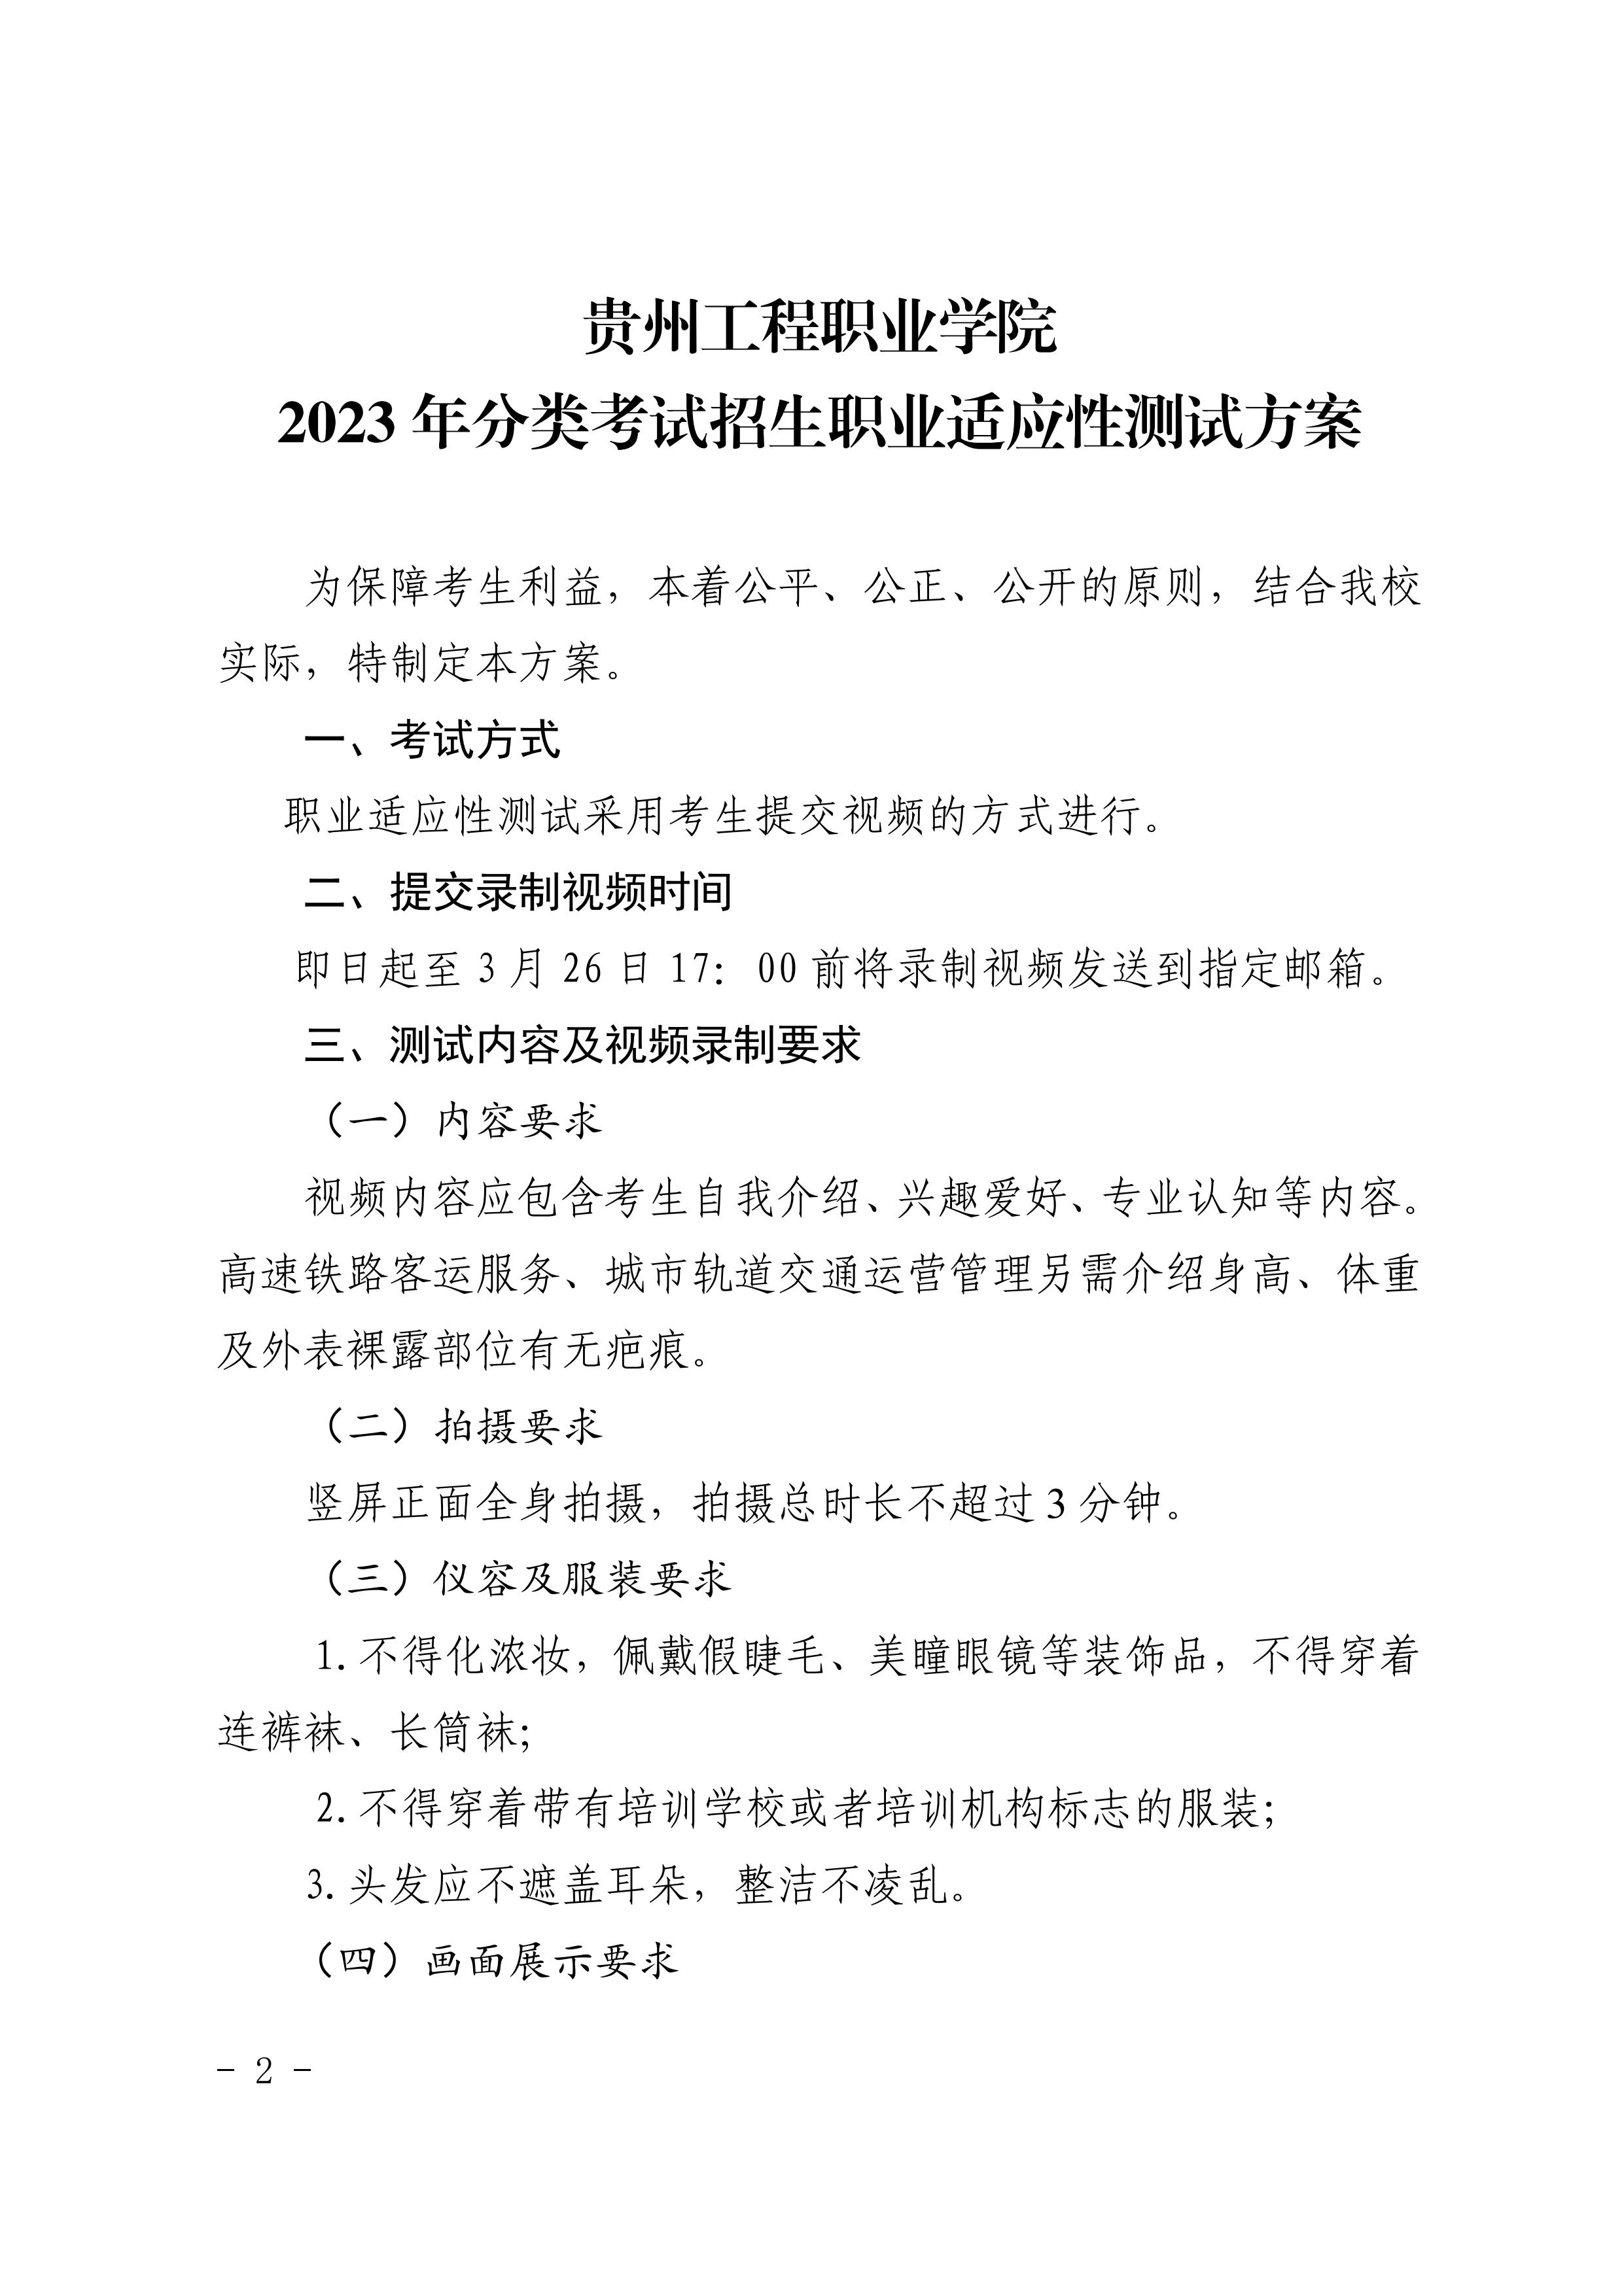 九州电竞(中国)九州有限公司 2023年分类考试招生职业适应性测试方案(图2)